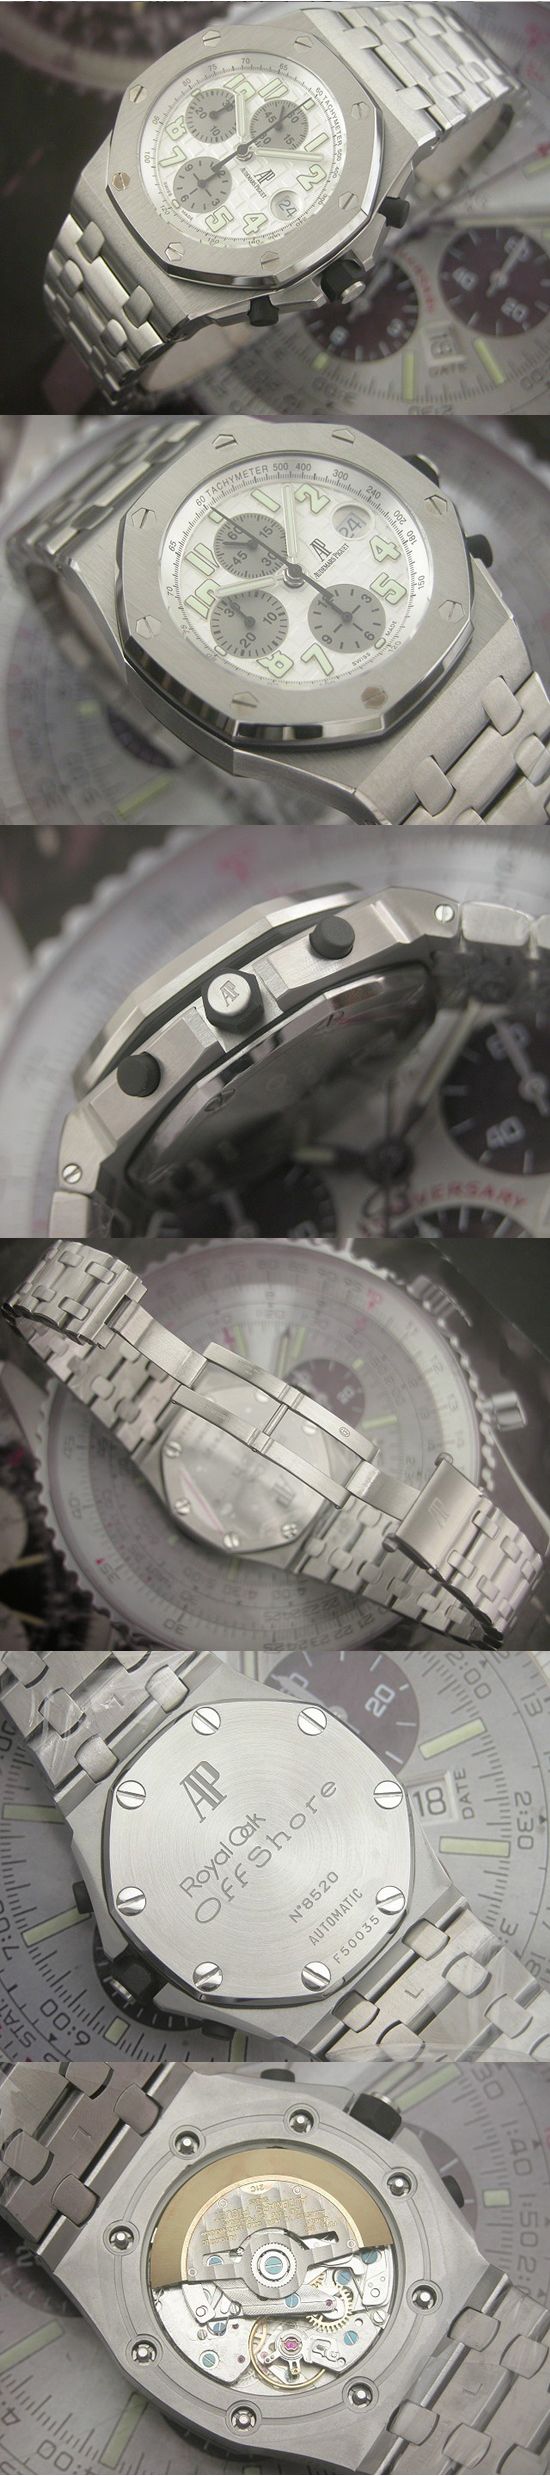 おしゃれなブランド時計がオーデマピゲ-ロイヤルオークオフショア-AUDEMARS PIGUET-25721ST.OO.1000ST.07-男性用を提供します.